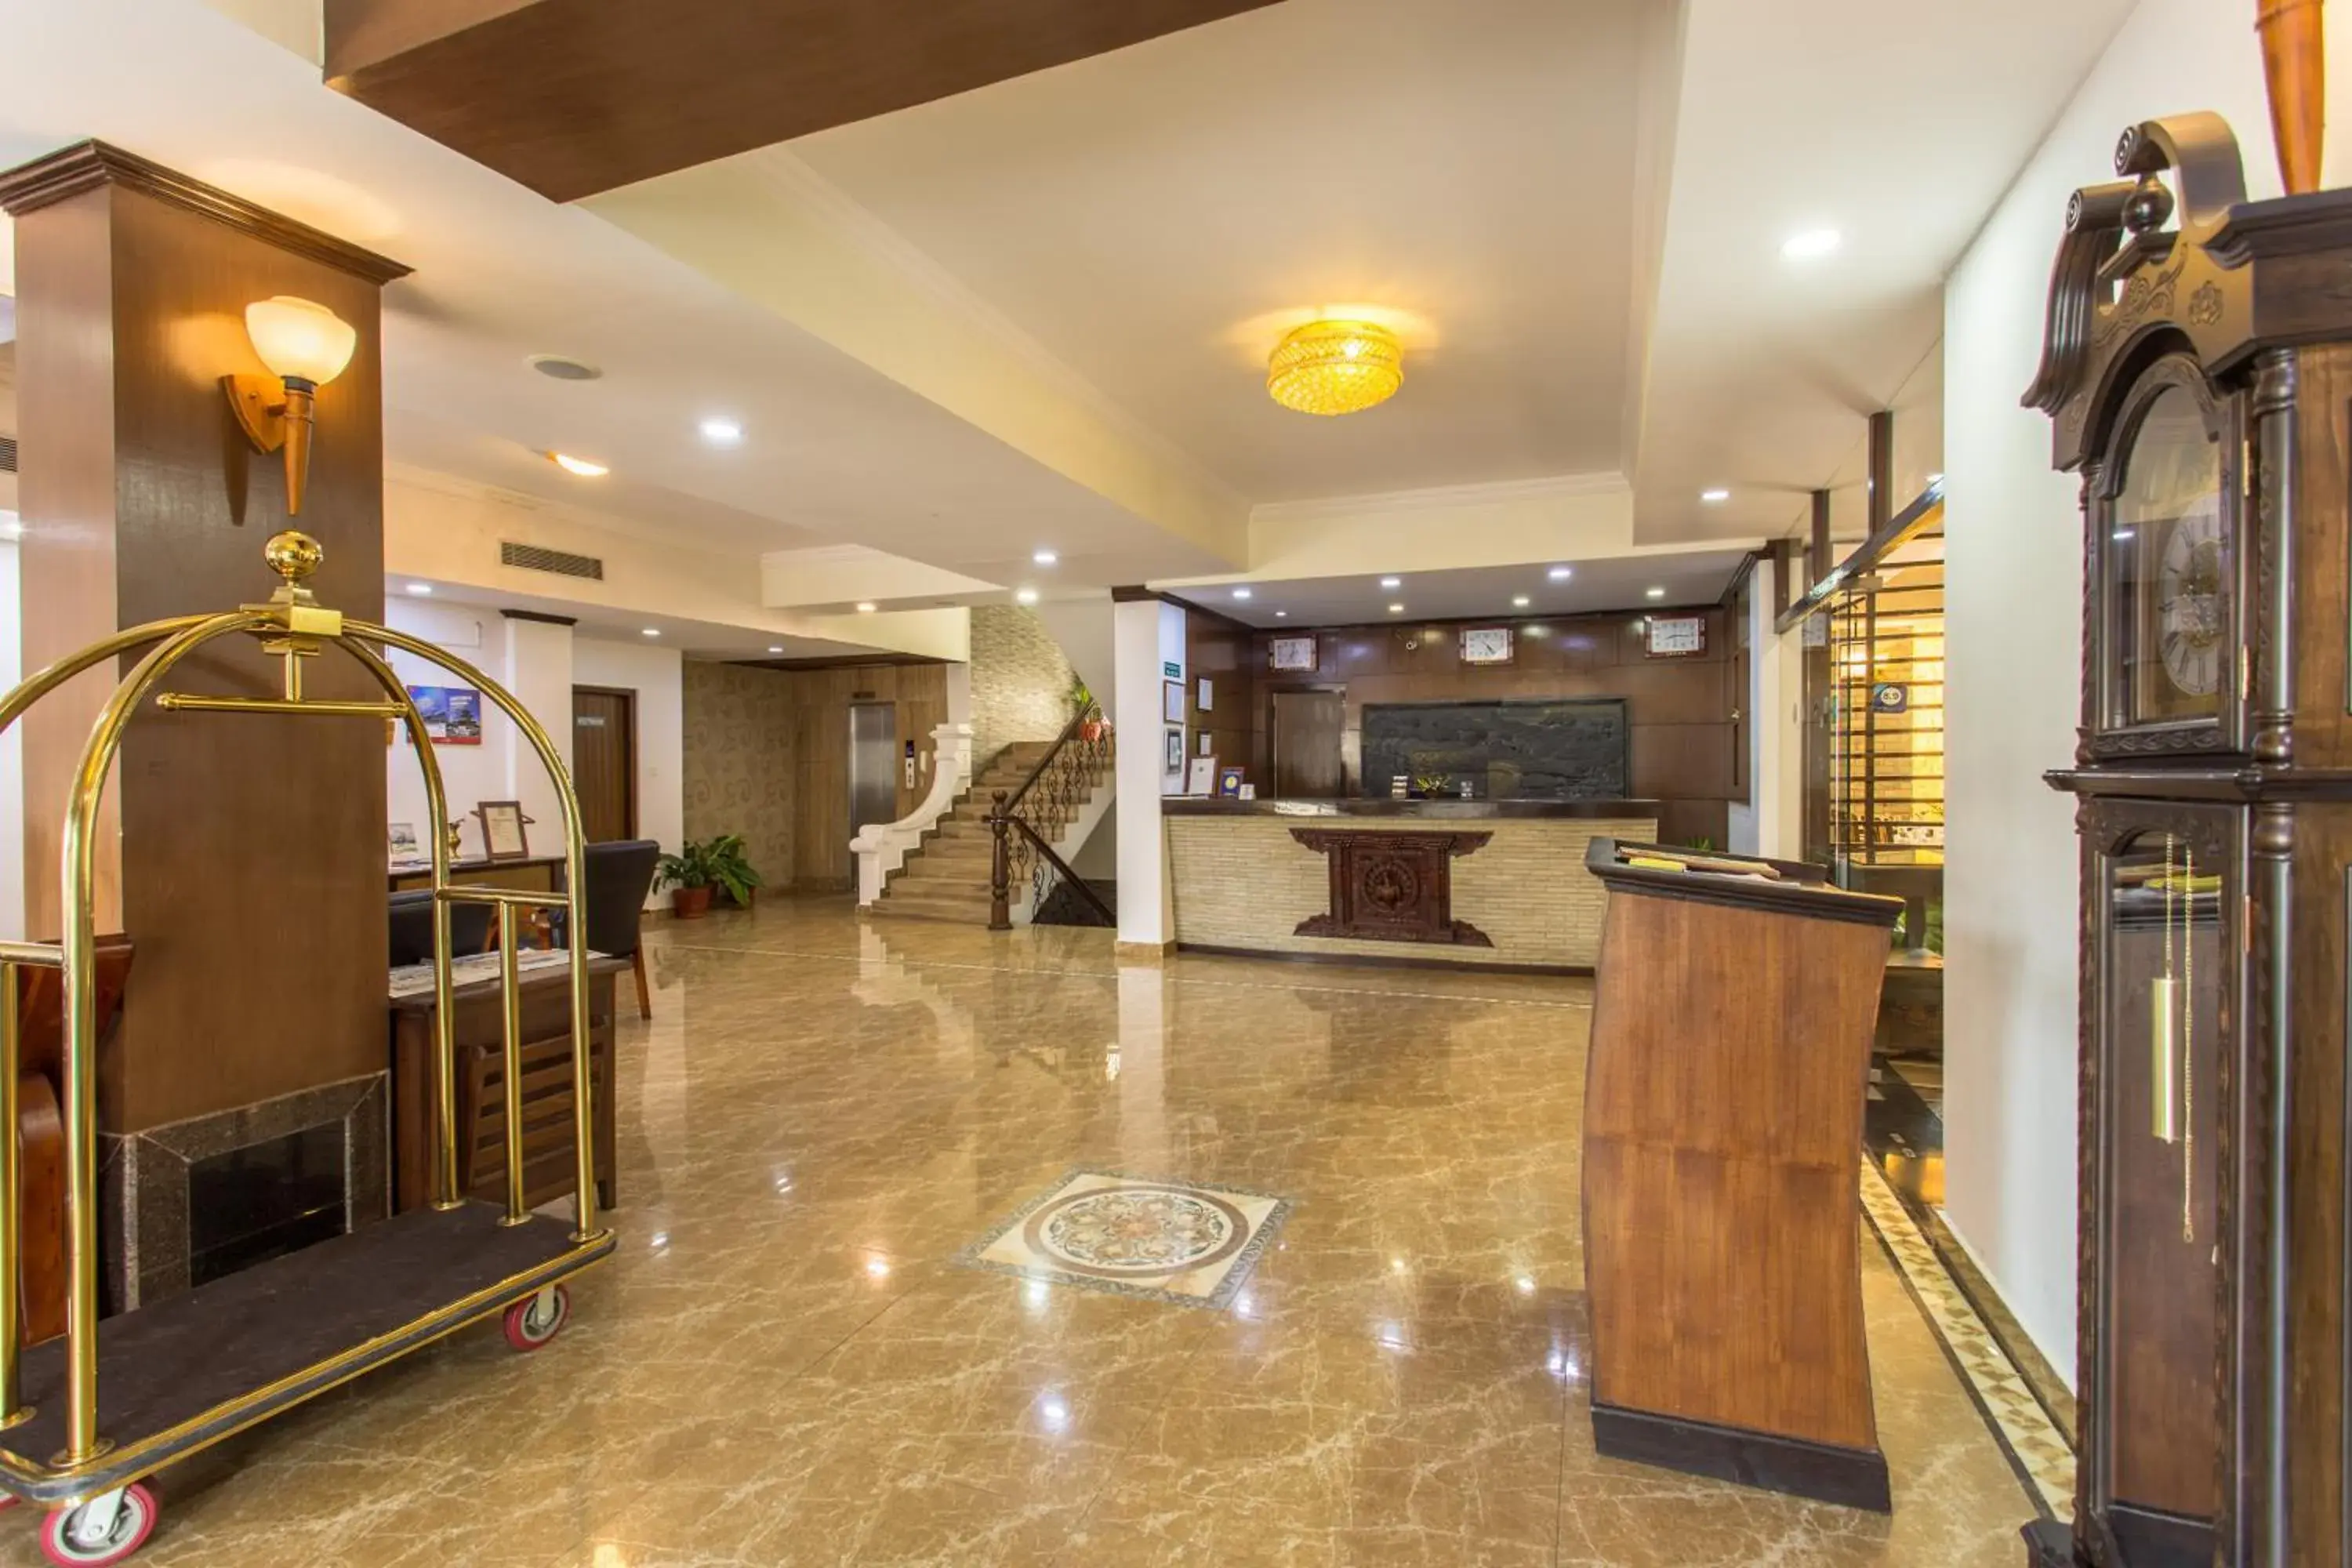 Lobby or reception, Lobby/Reception in Da Yatra Courtyard Hotel